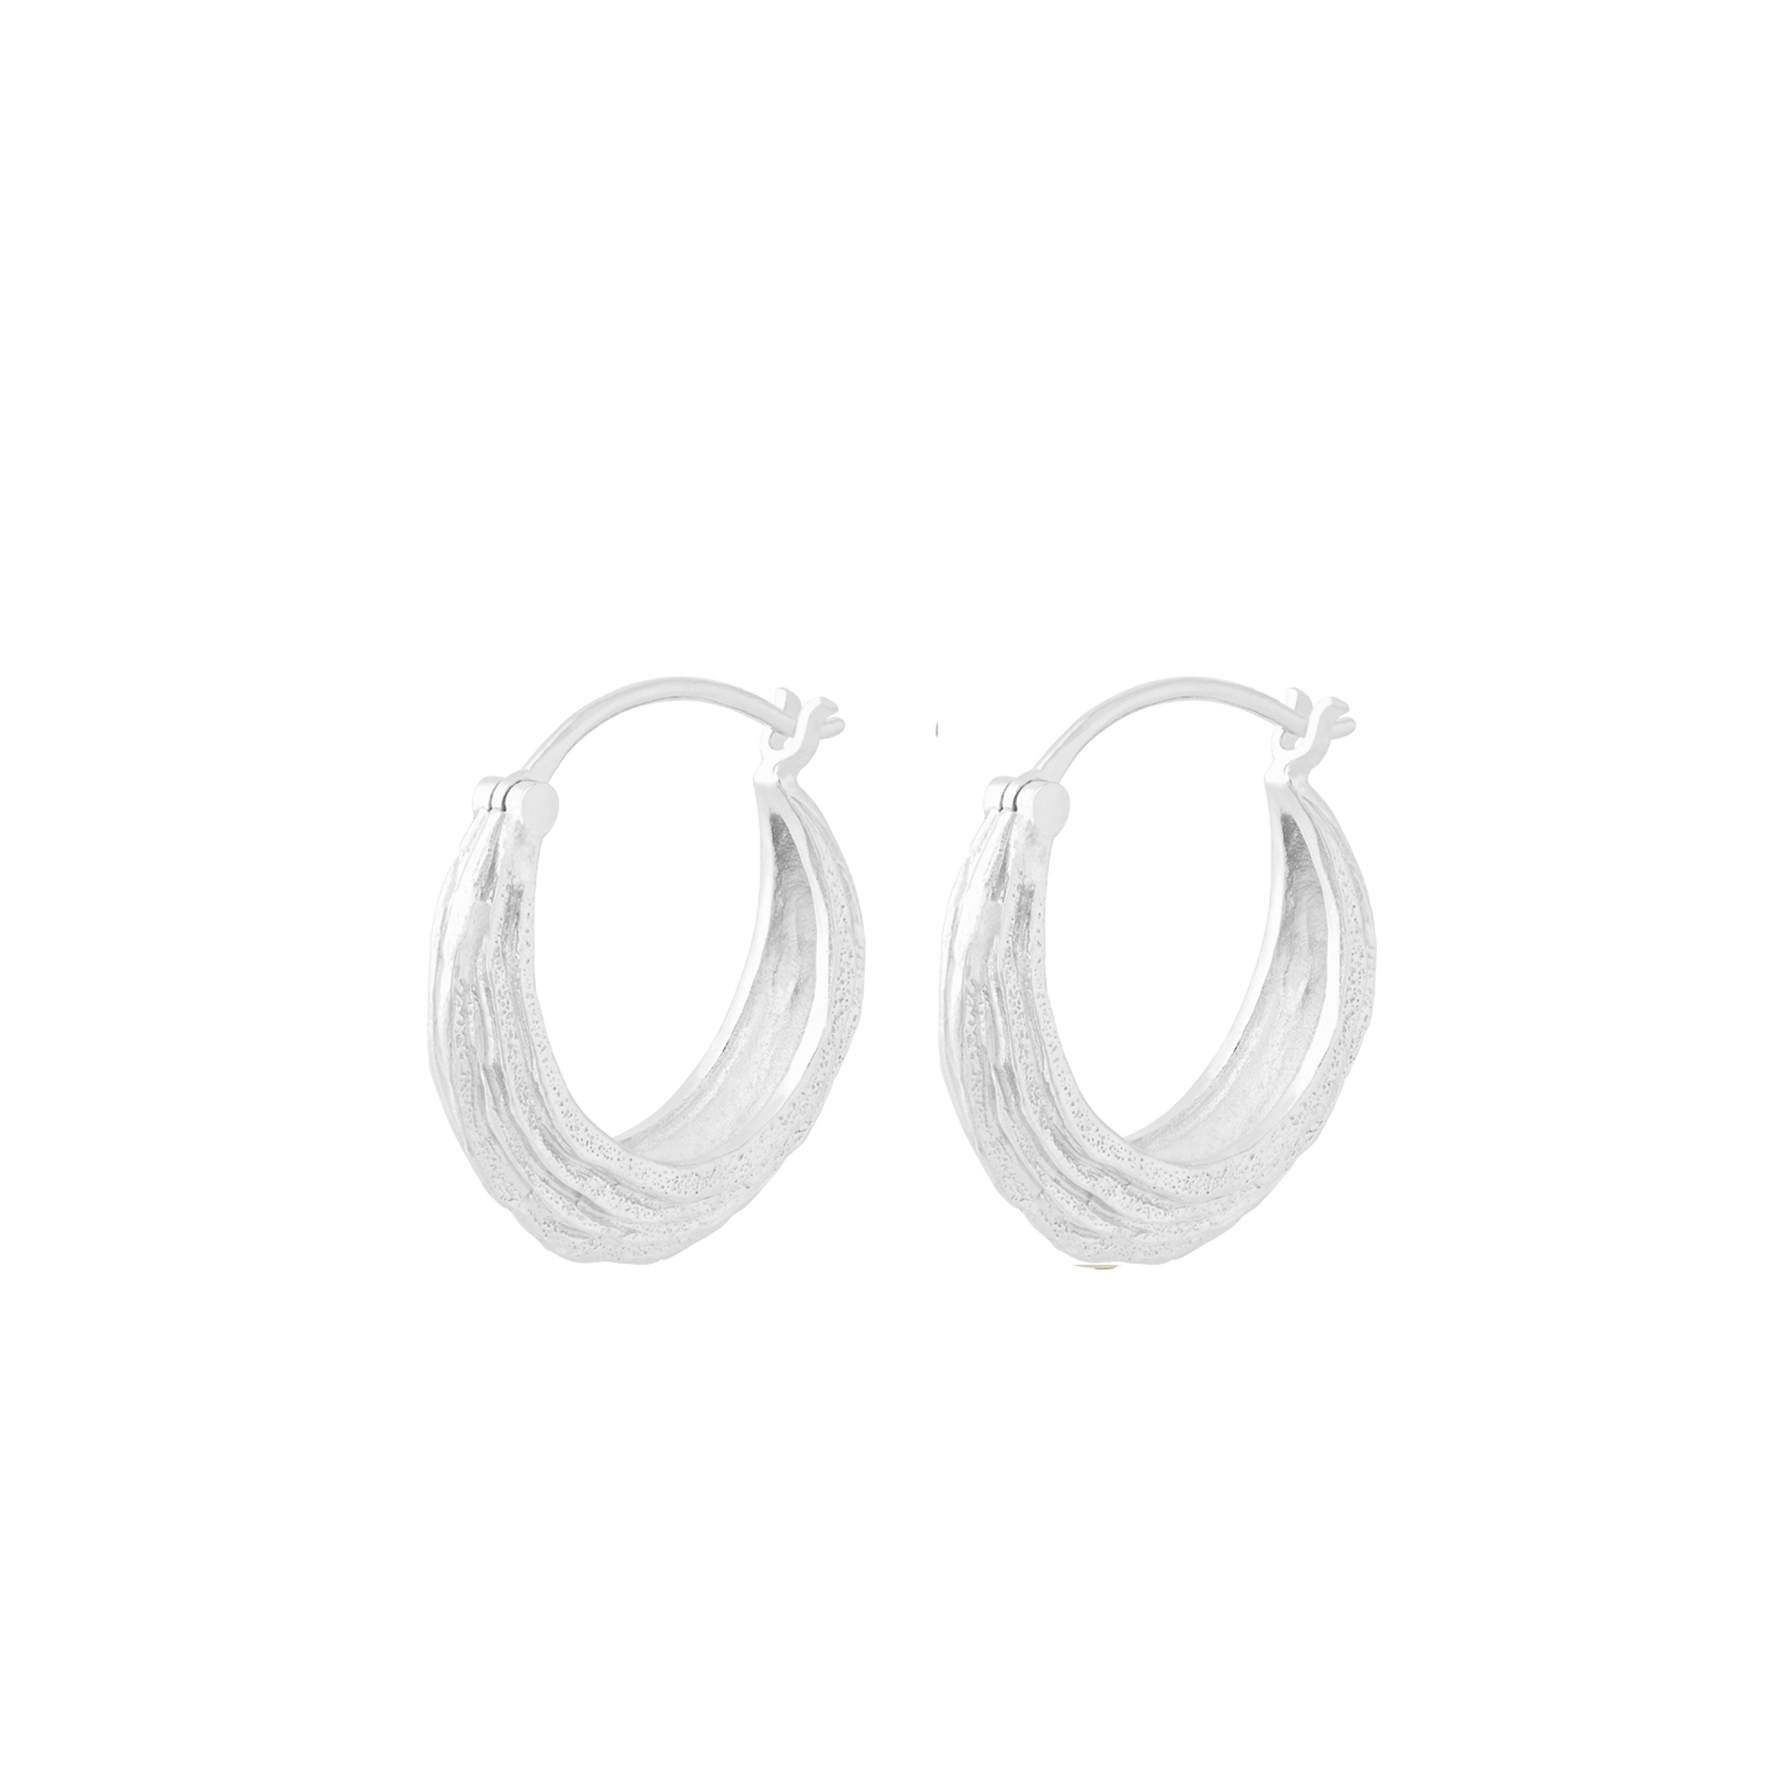 Coastline Earrings from Pernille Corydon in Silver Sterling 925